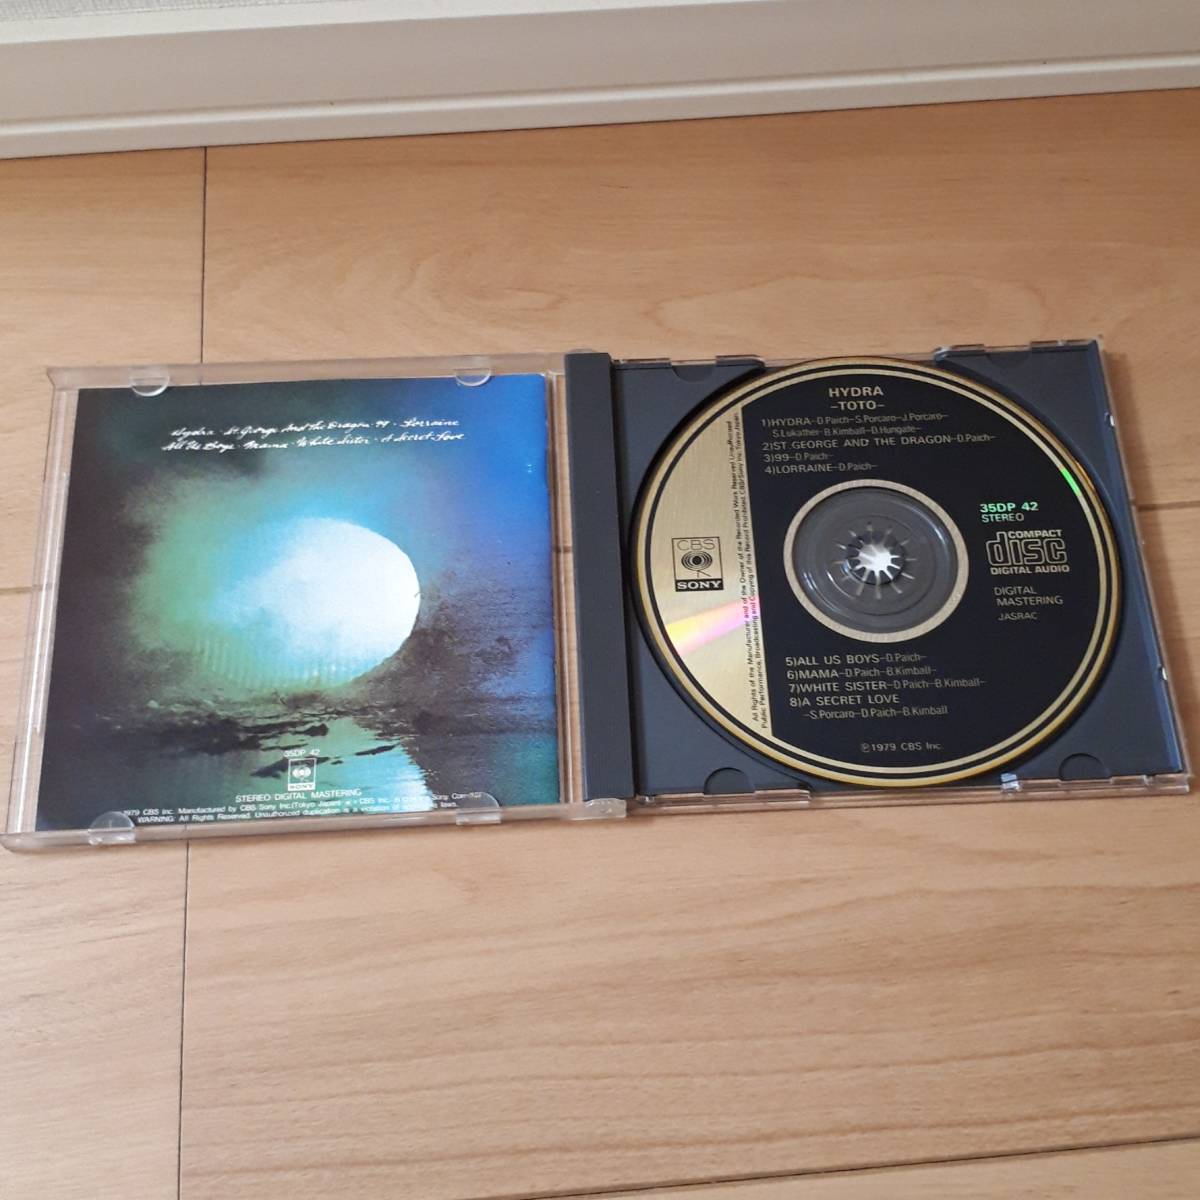  старый стандарт CD золотой этикетка TOTO [ hyde laHydra] 35DP 42 CBS печать 